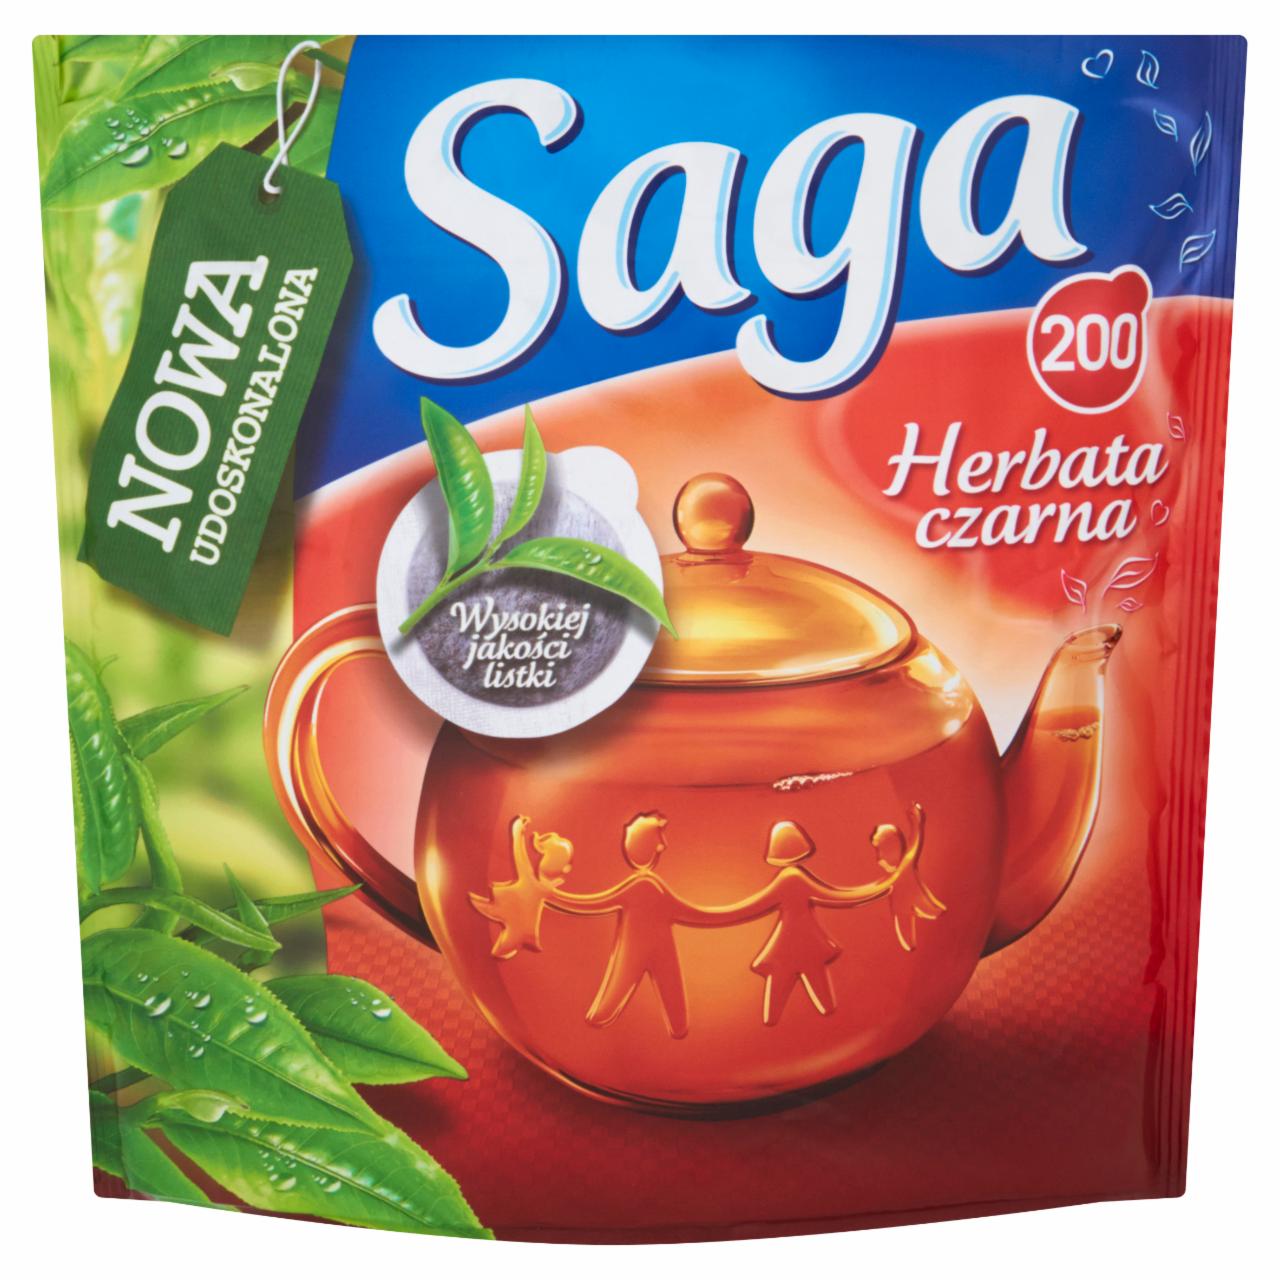 Zdjęcia - Saga Herbata czarna 240 g (200 torebek)